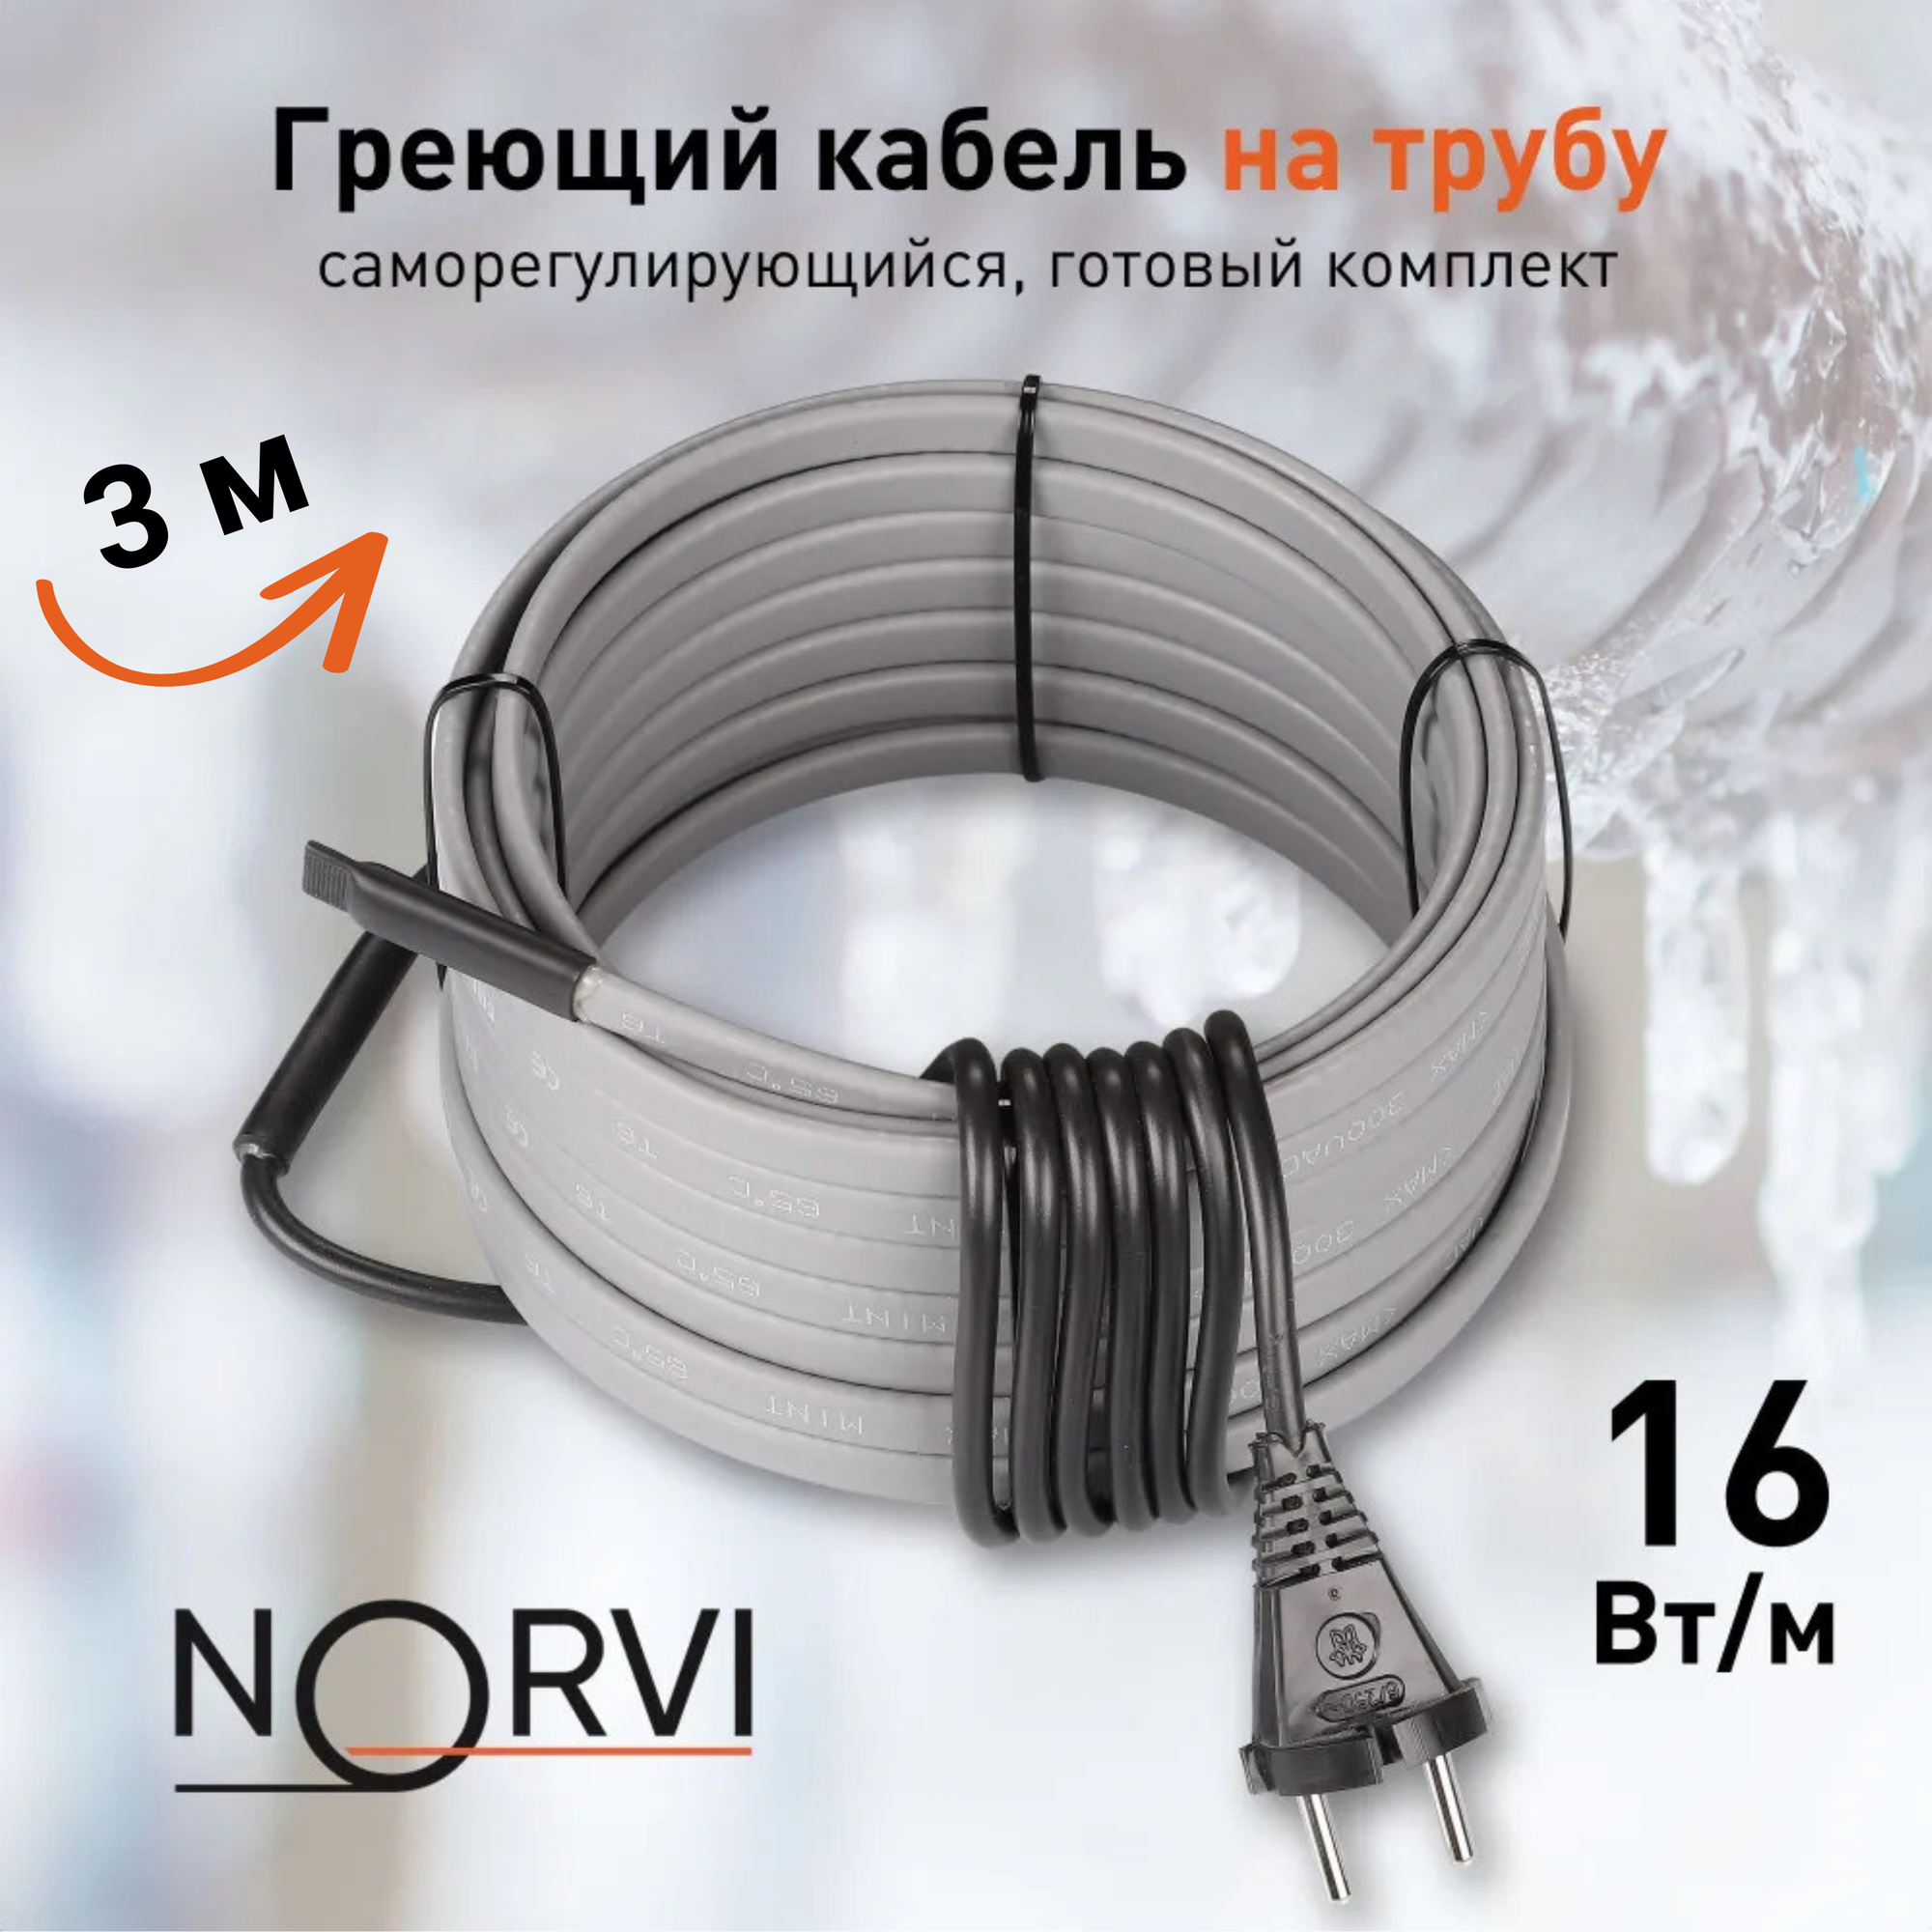 Греющий кабель NORVI ONPIPE, 48 Вт, 3 м, для обогрева труб снаружи